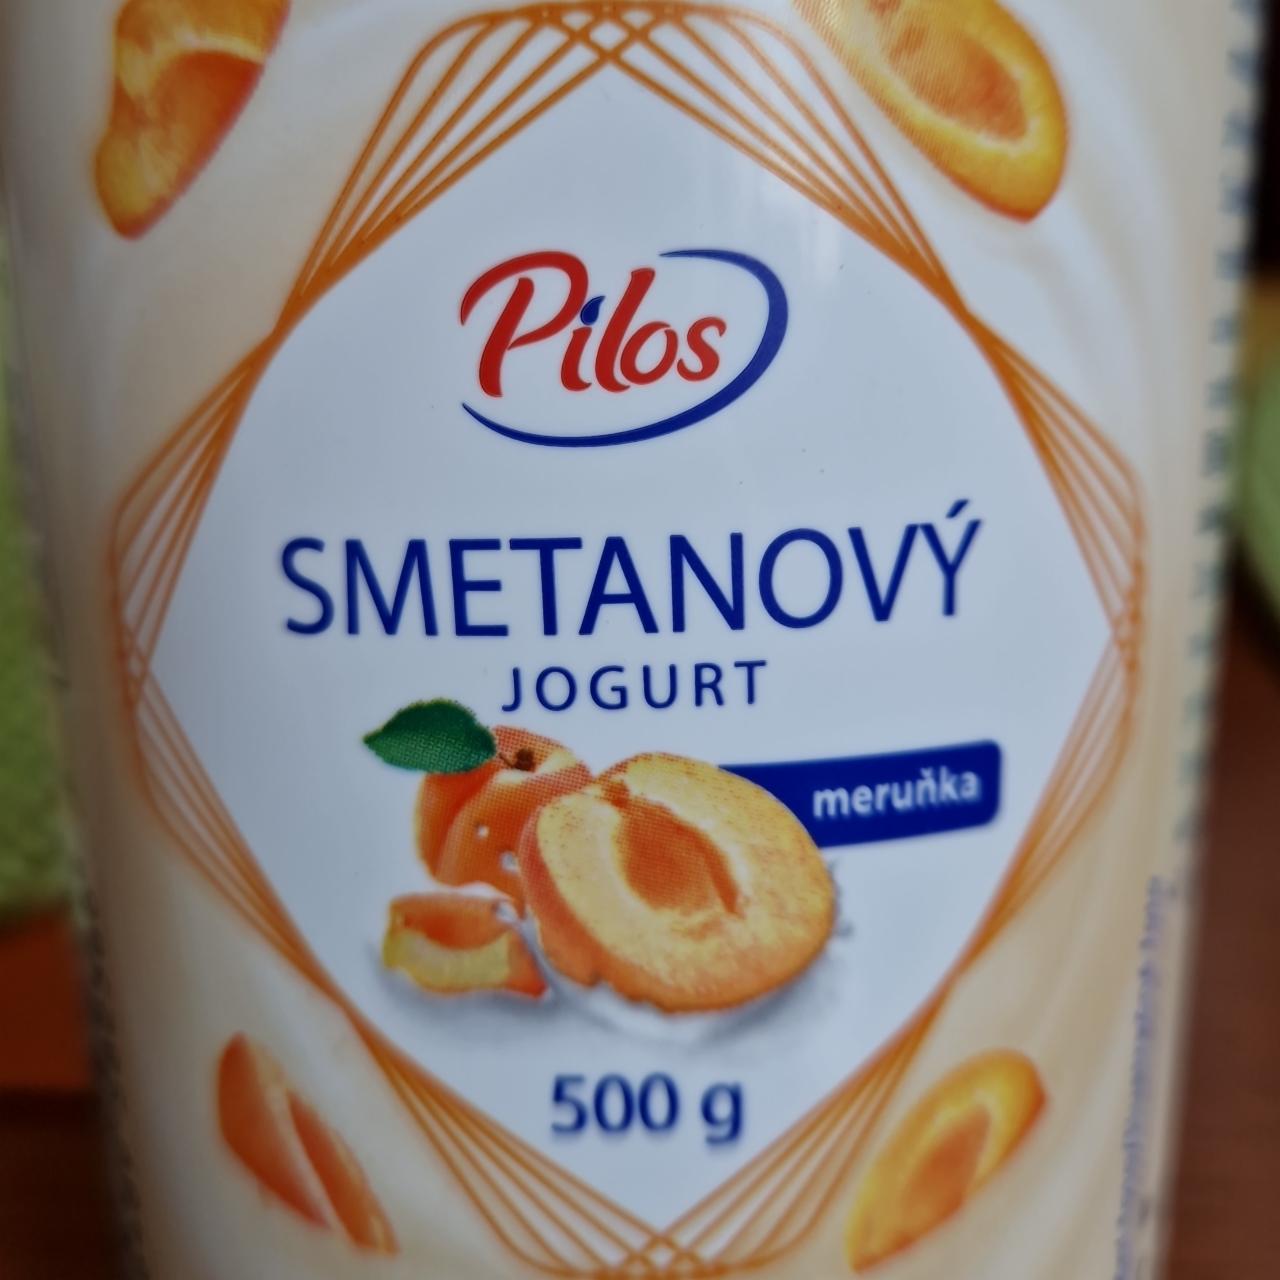 Fotografie - Smetanový jogurt meruňka Pilos